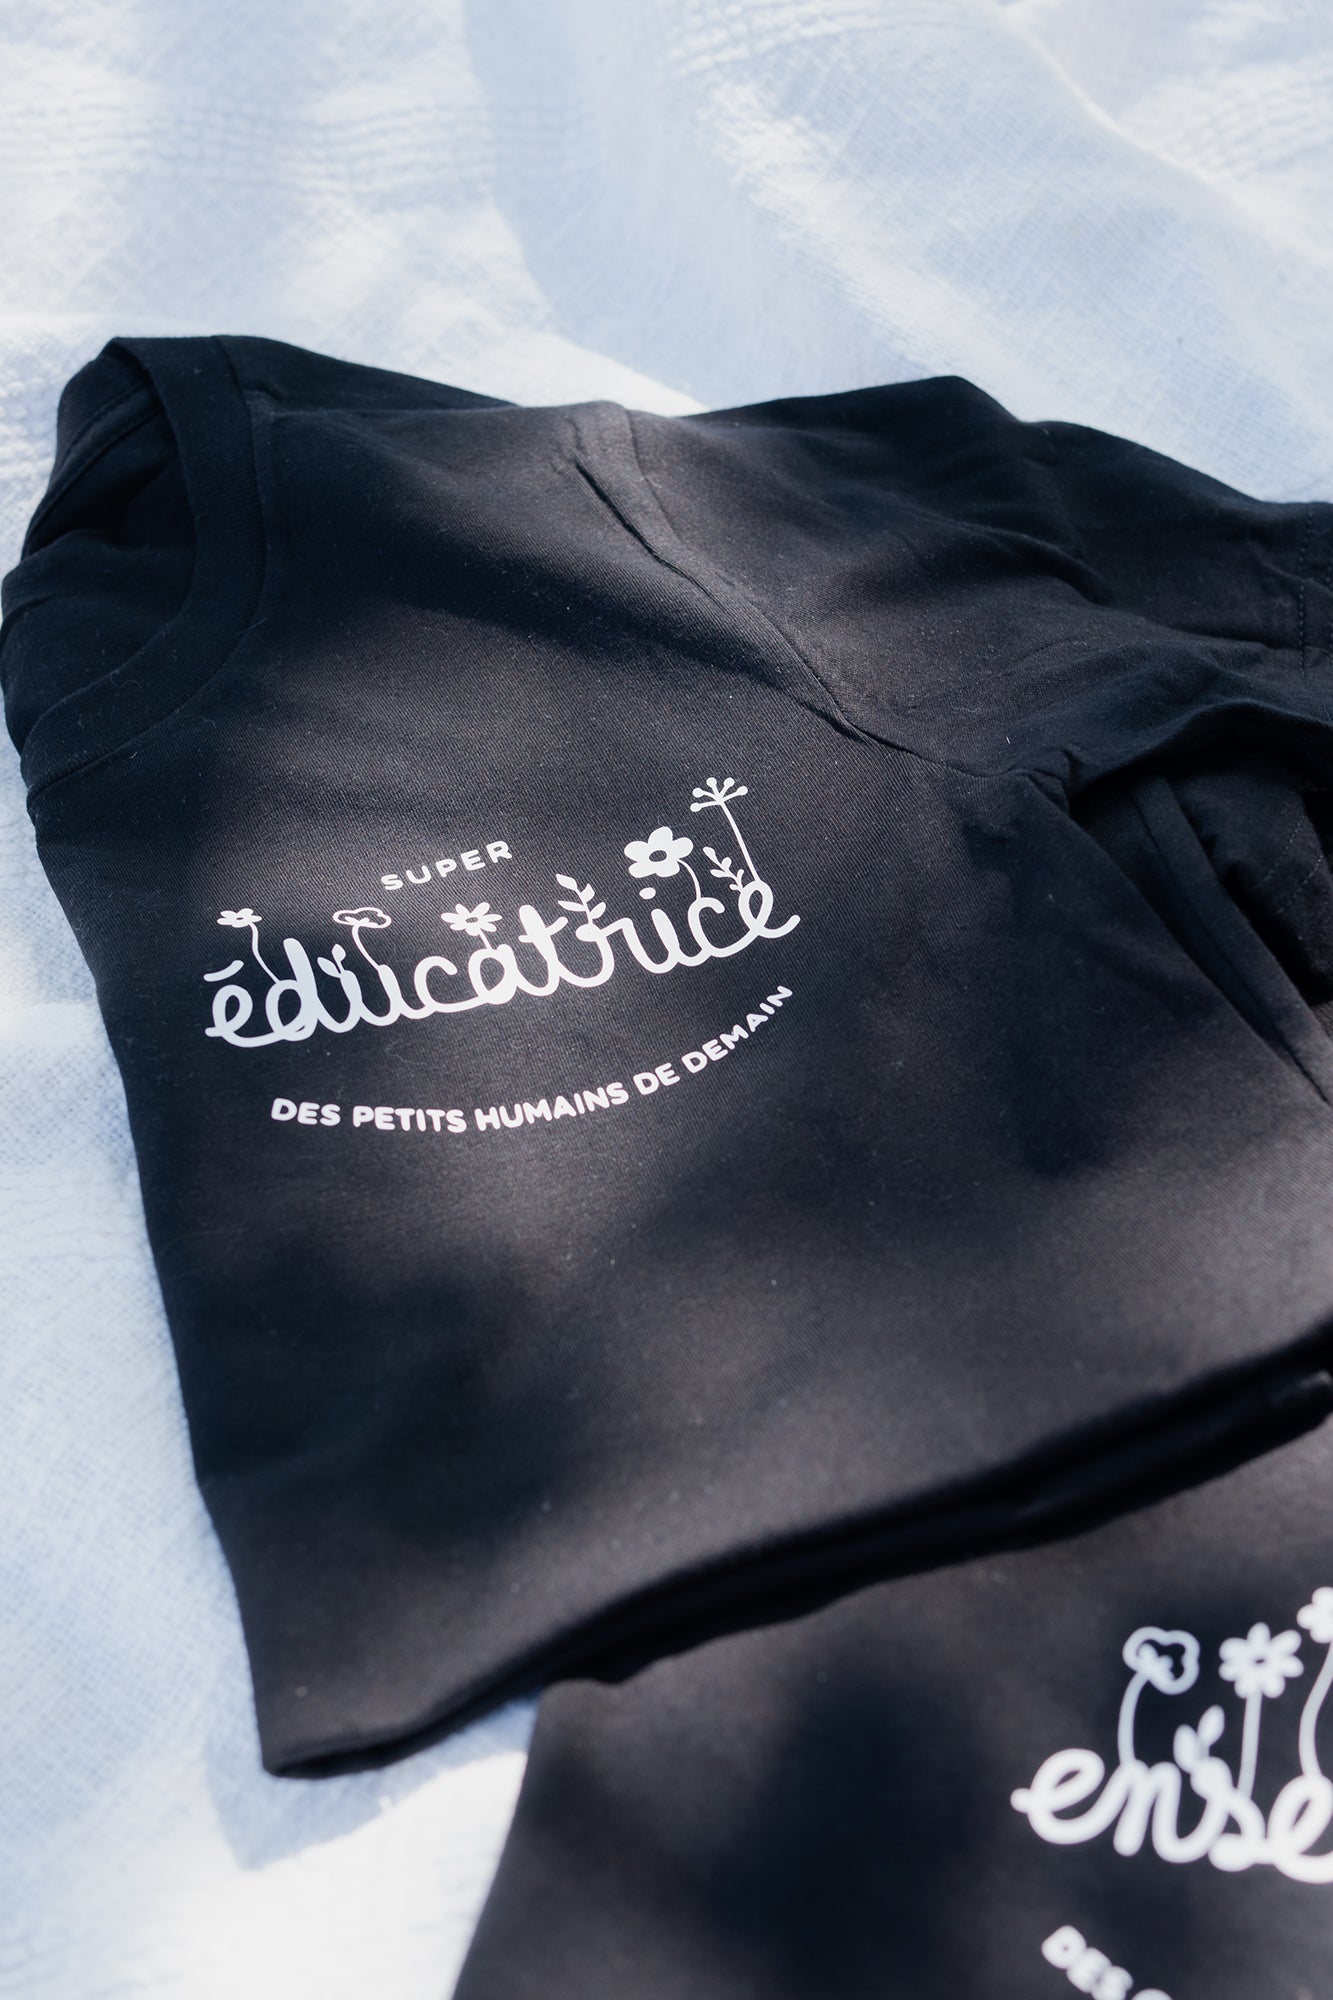 *prêt-à-partir* Design fleuri "super éducatrice des petits humains de demain" - T-shirt coupe droite (unisexe) en Noir